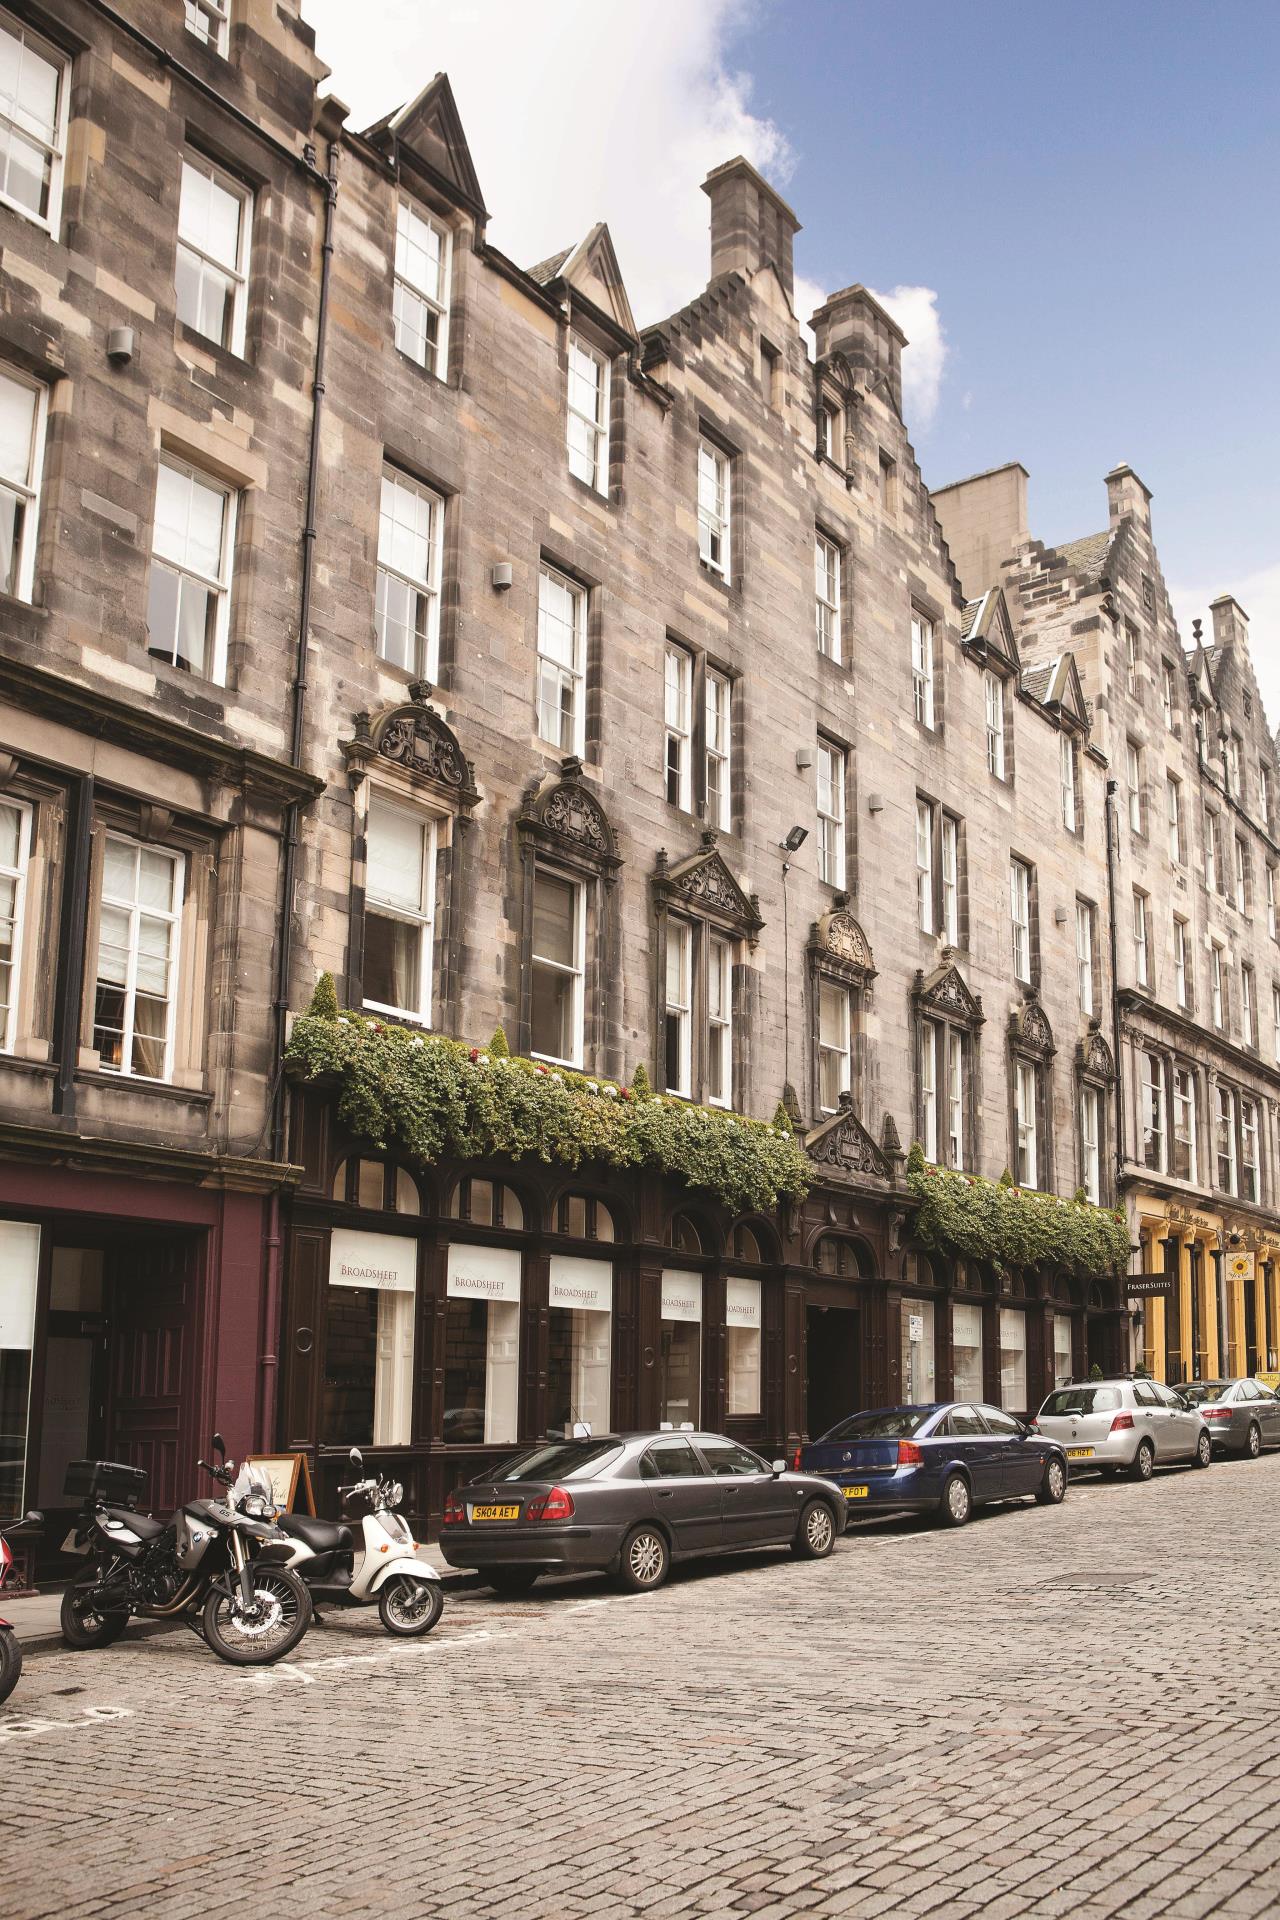 Fraser Suites – Edinburgh | Hotel Review